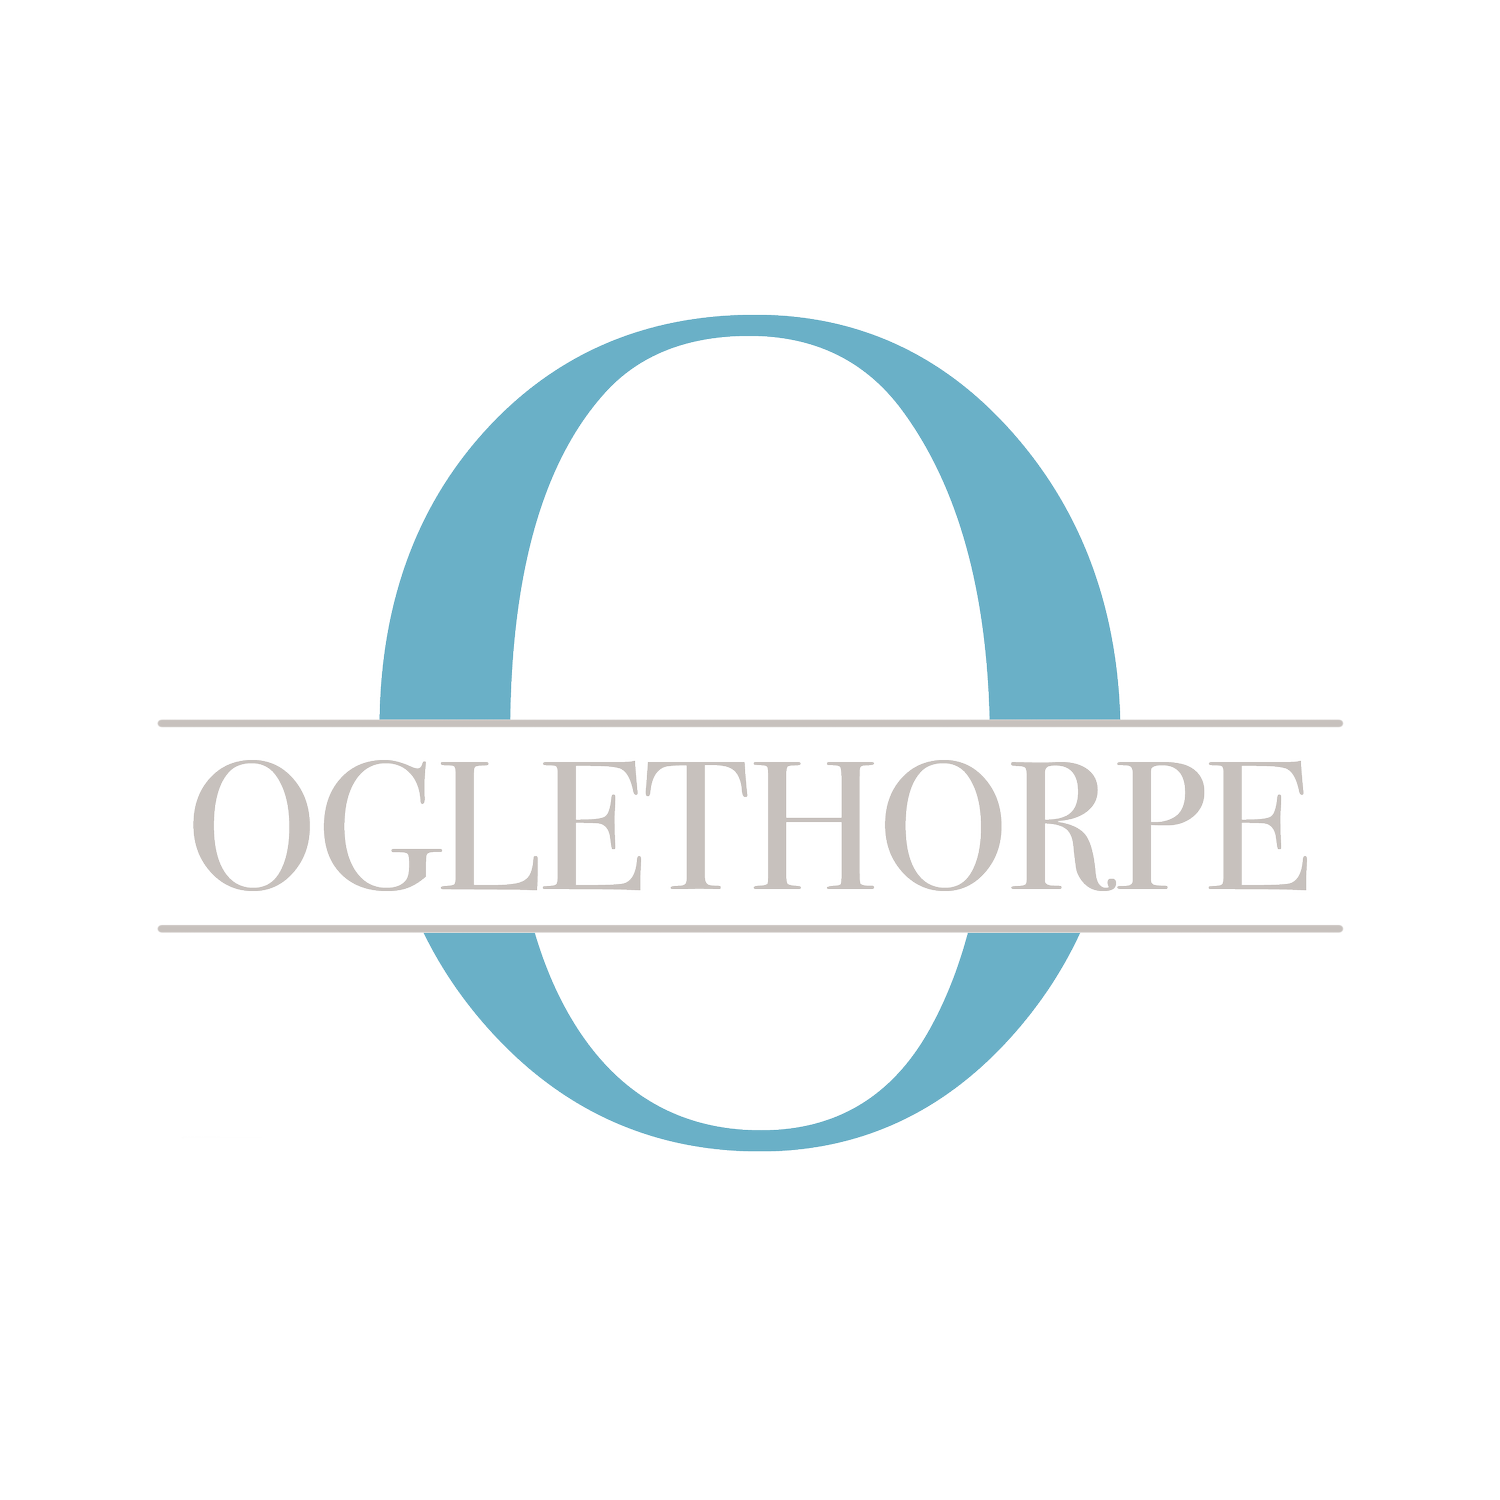 The Oglethorpe Inn